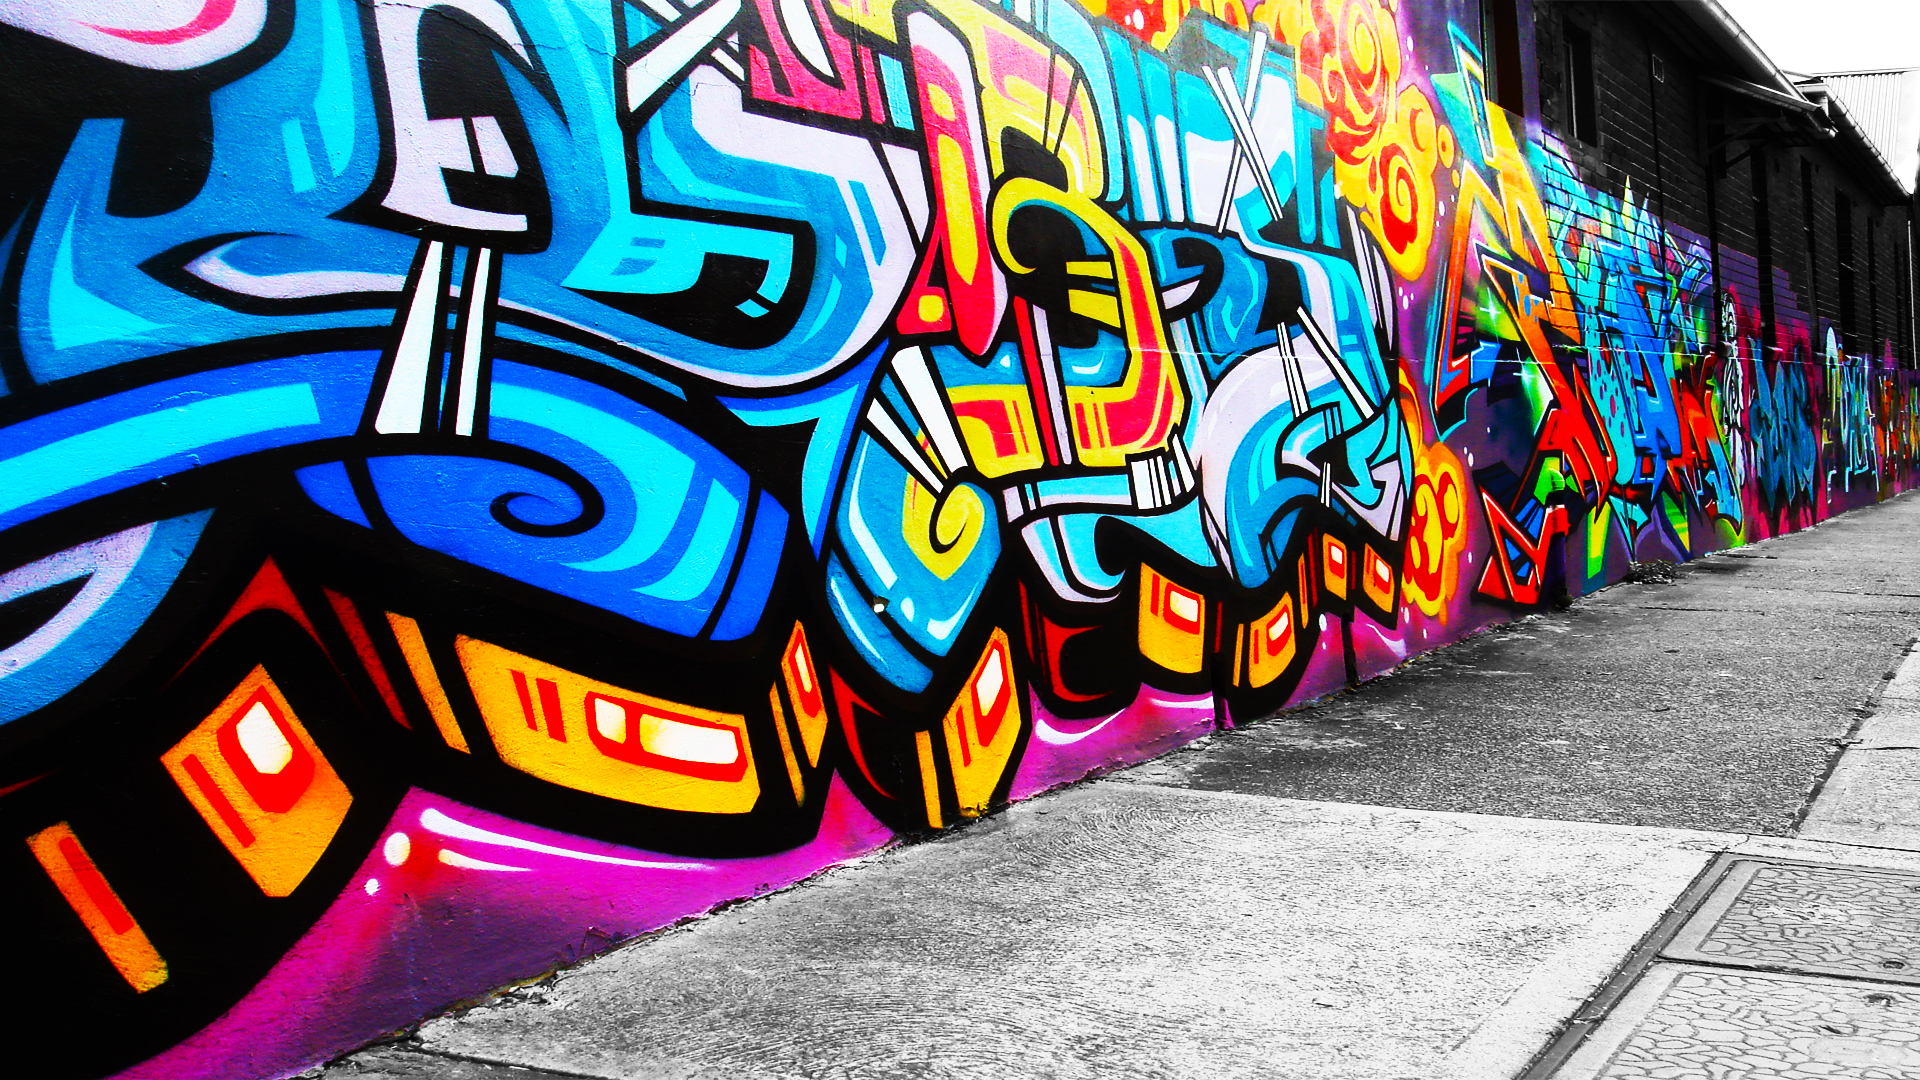 Description Free Graffiti Wallpaper is a hi res Wallpaper for pc